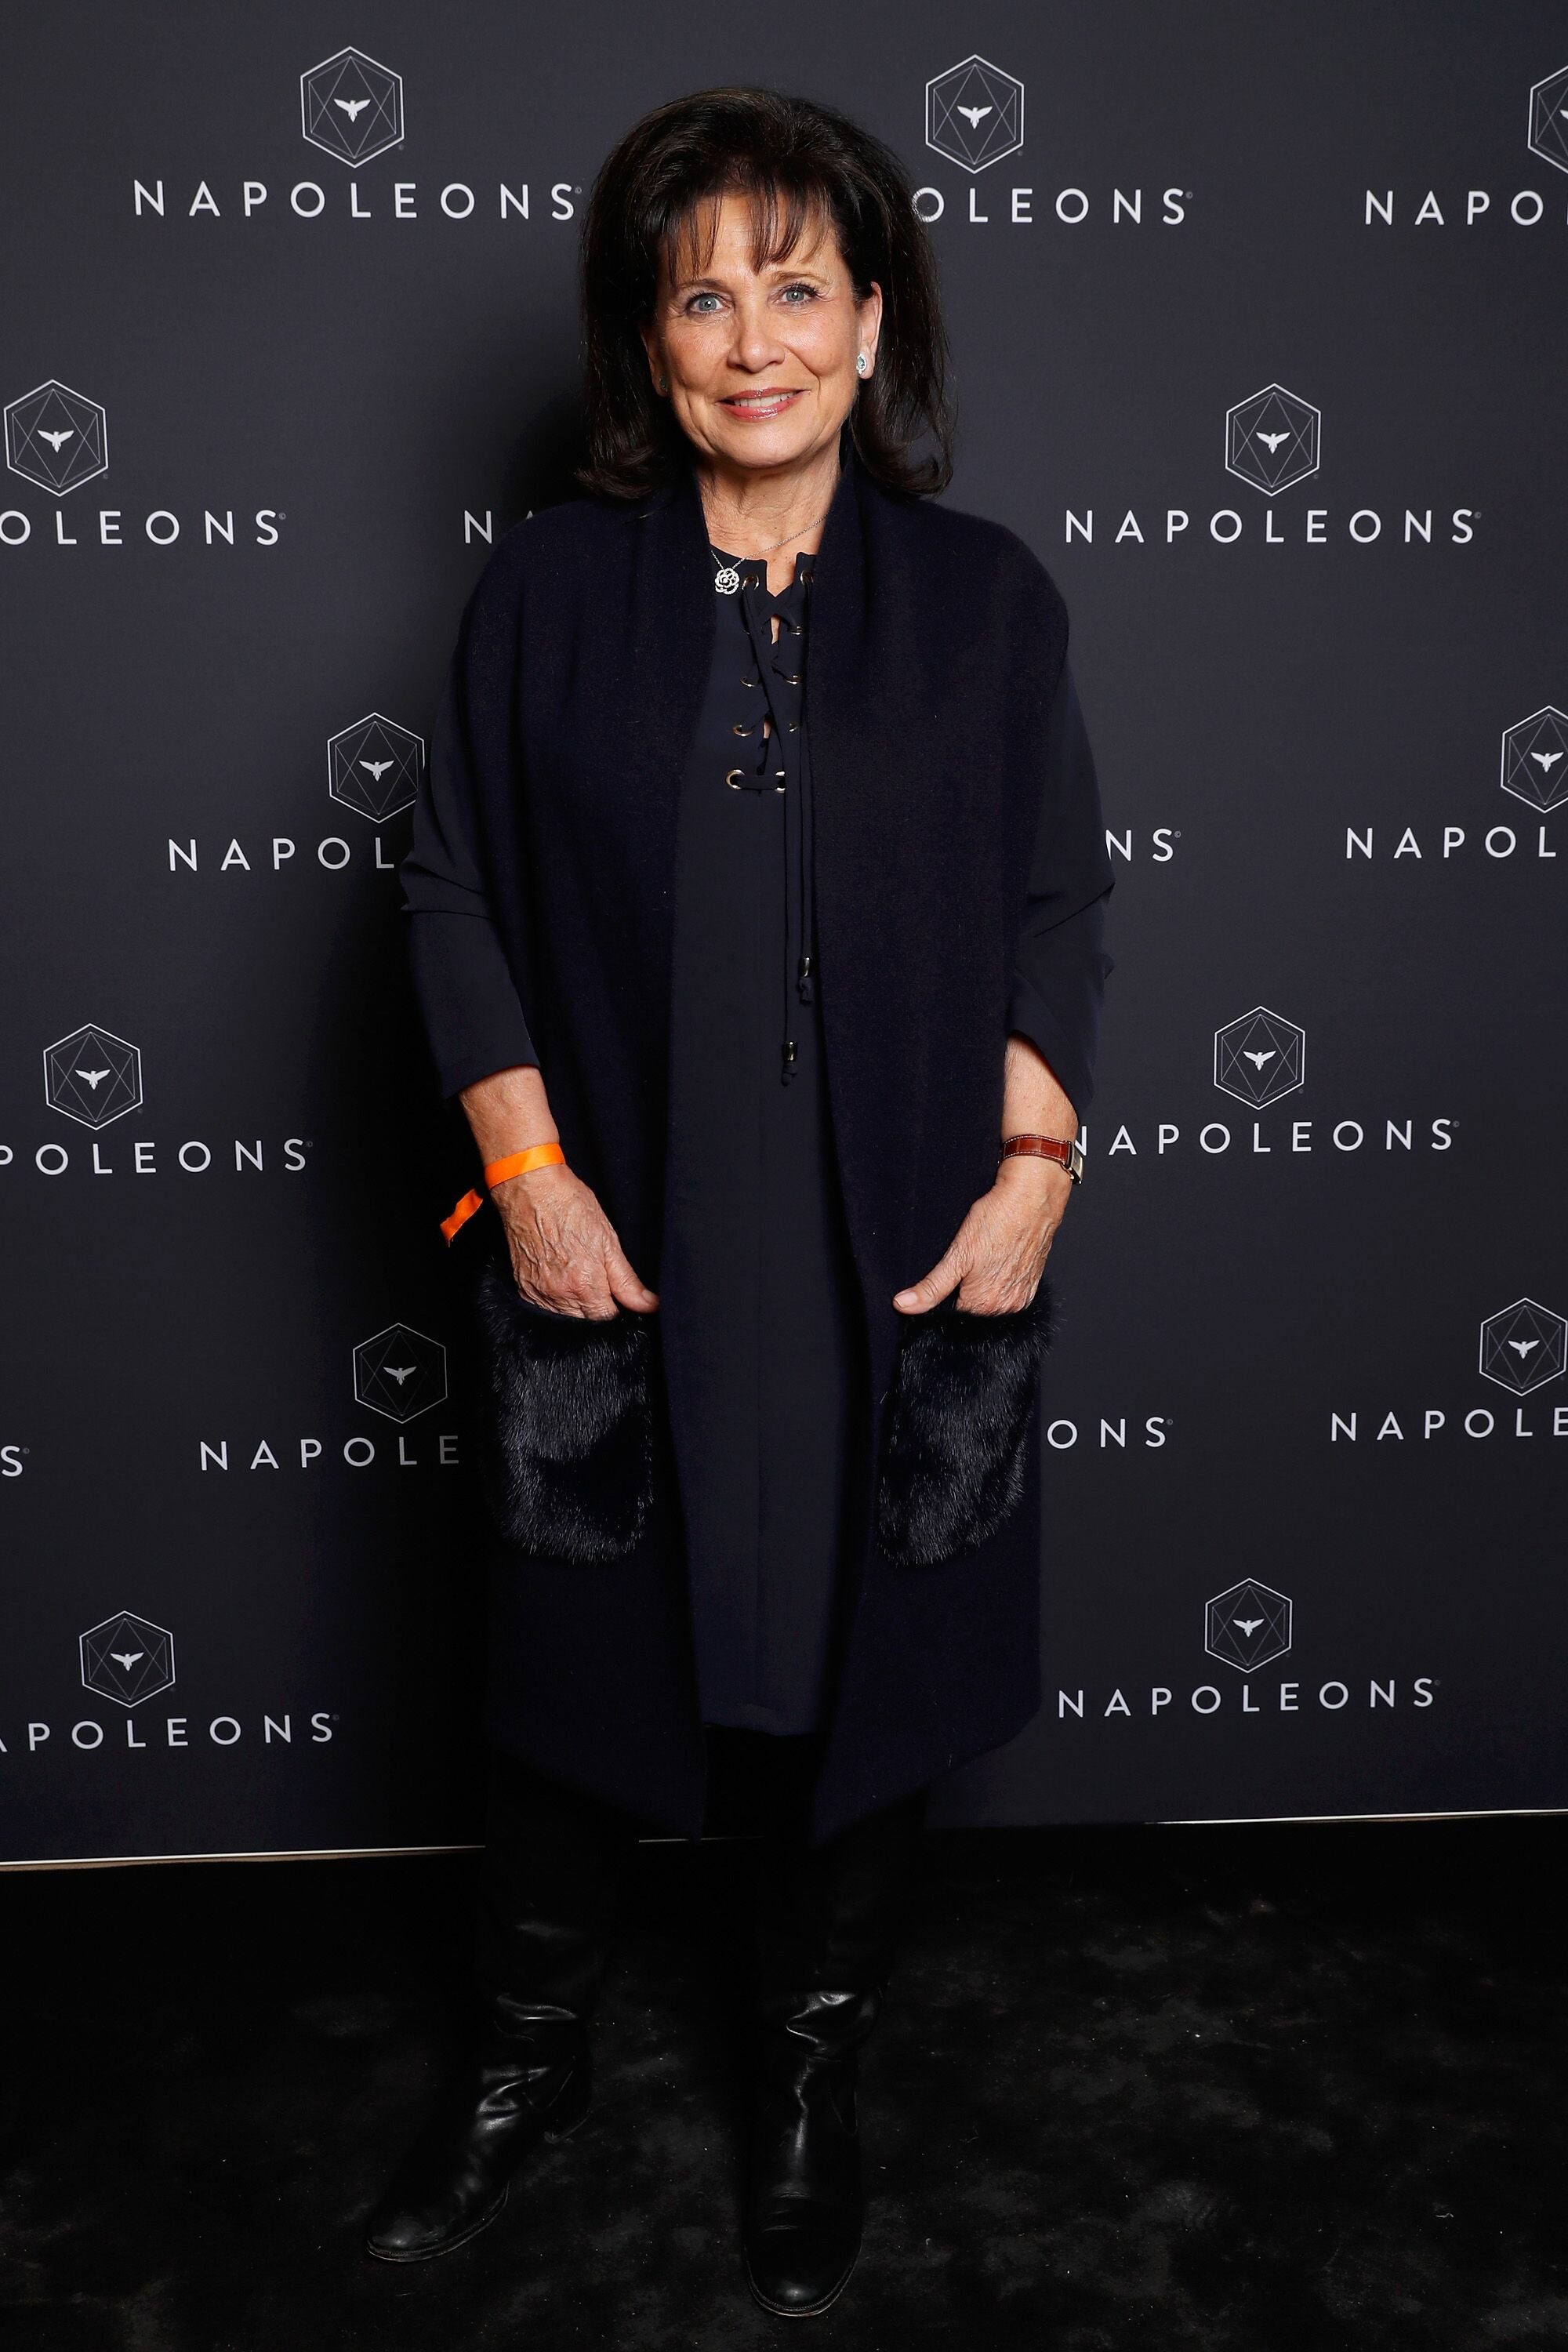 Anne Sinclair assiste à la séance d'introduction au 7e sommet des Napoléons à la Maison de la Radio le 2 décembre 2017 à Paris, France. | Photo : Getty Images